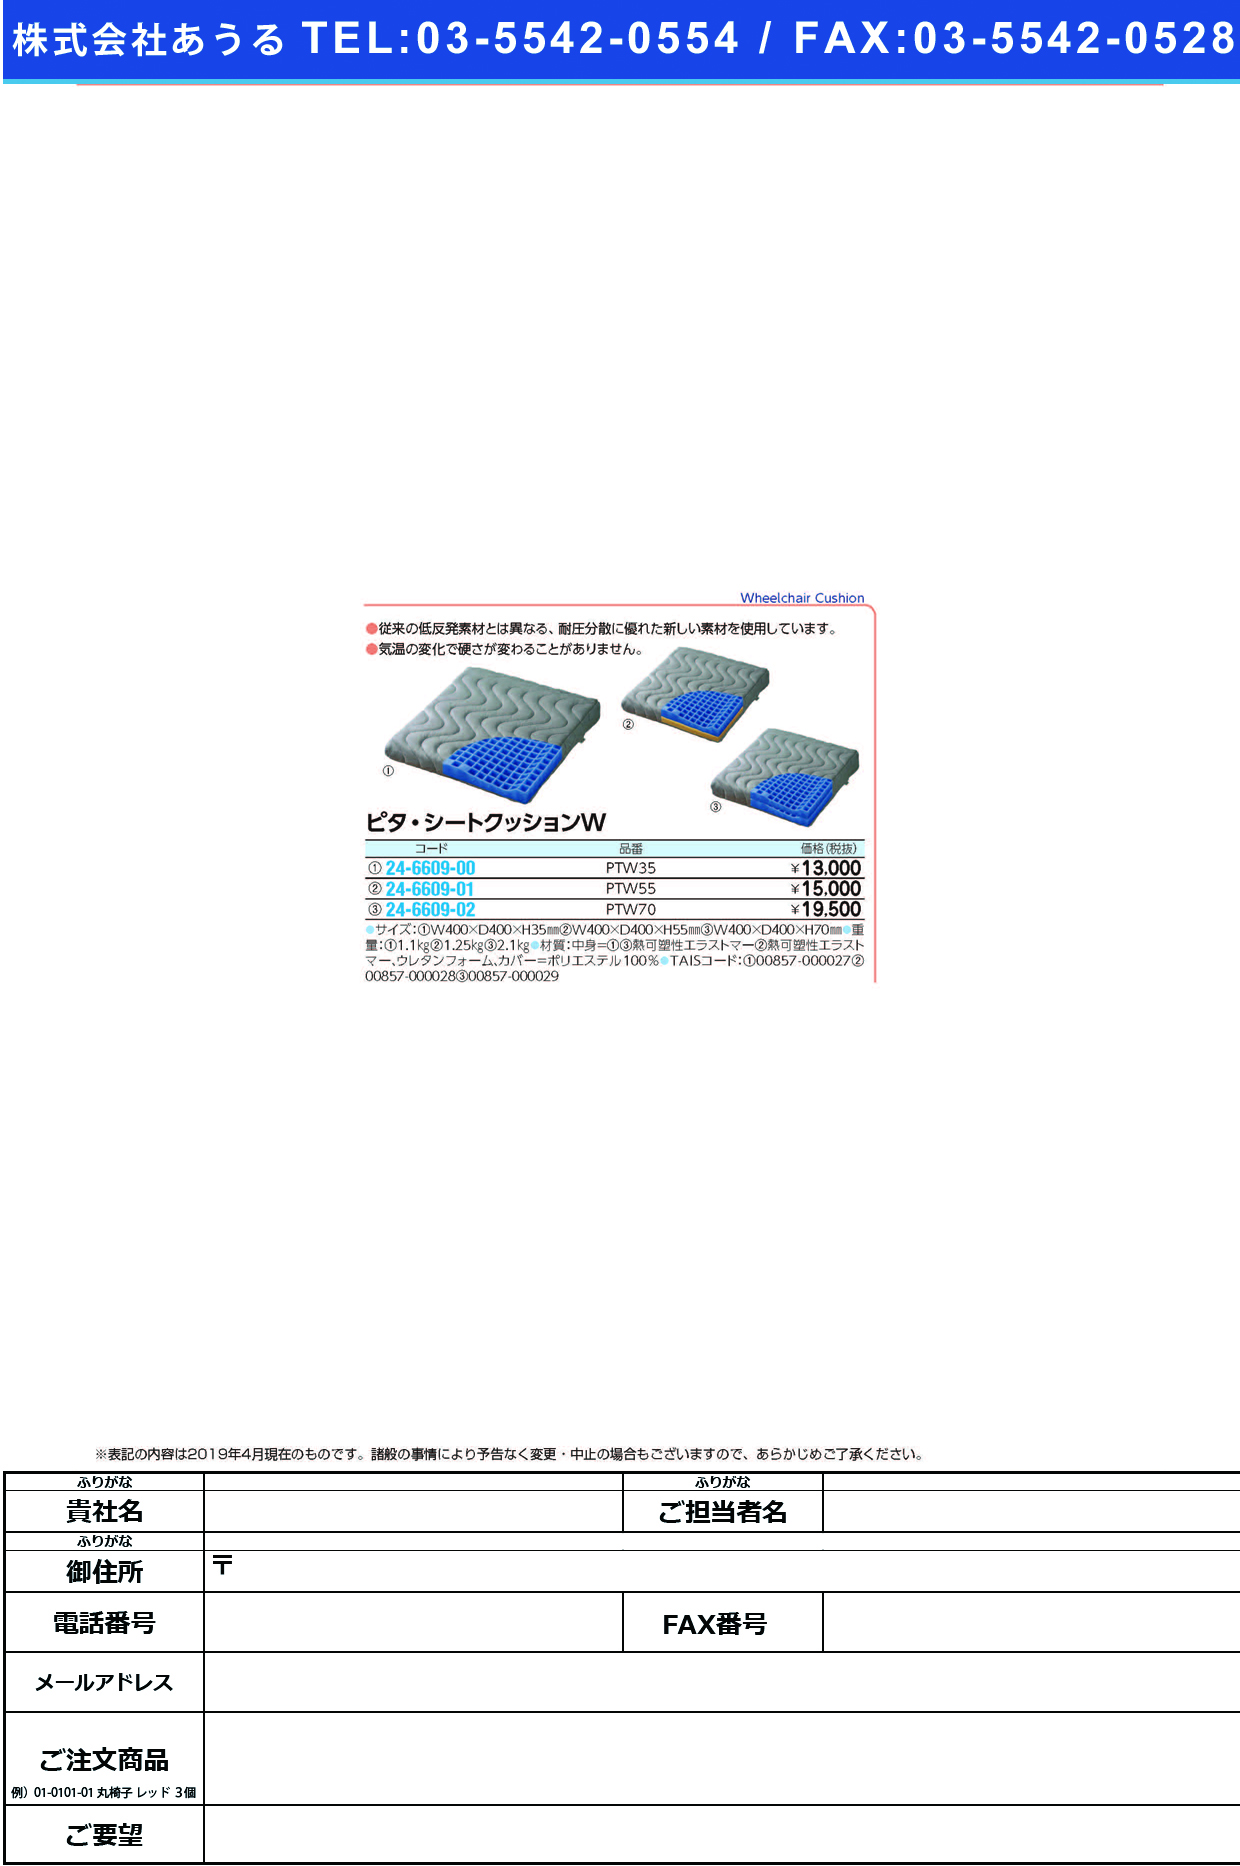 (24-6609-02)ピタ・シートクッションＷ PTW70(400X400X70MM) ﾋﾟﾀｼｰﾄｸｯｼｮﾝW(日本エンゼル)【1枚単位】【2019年カタログ商品】